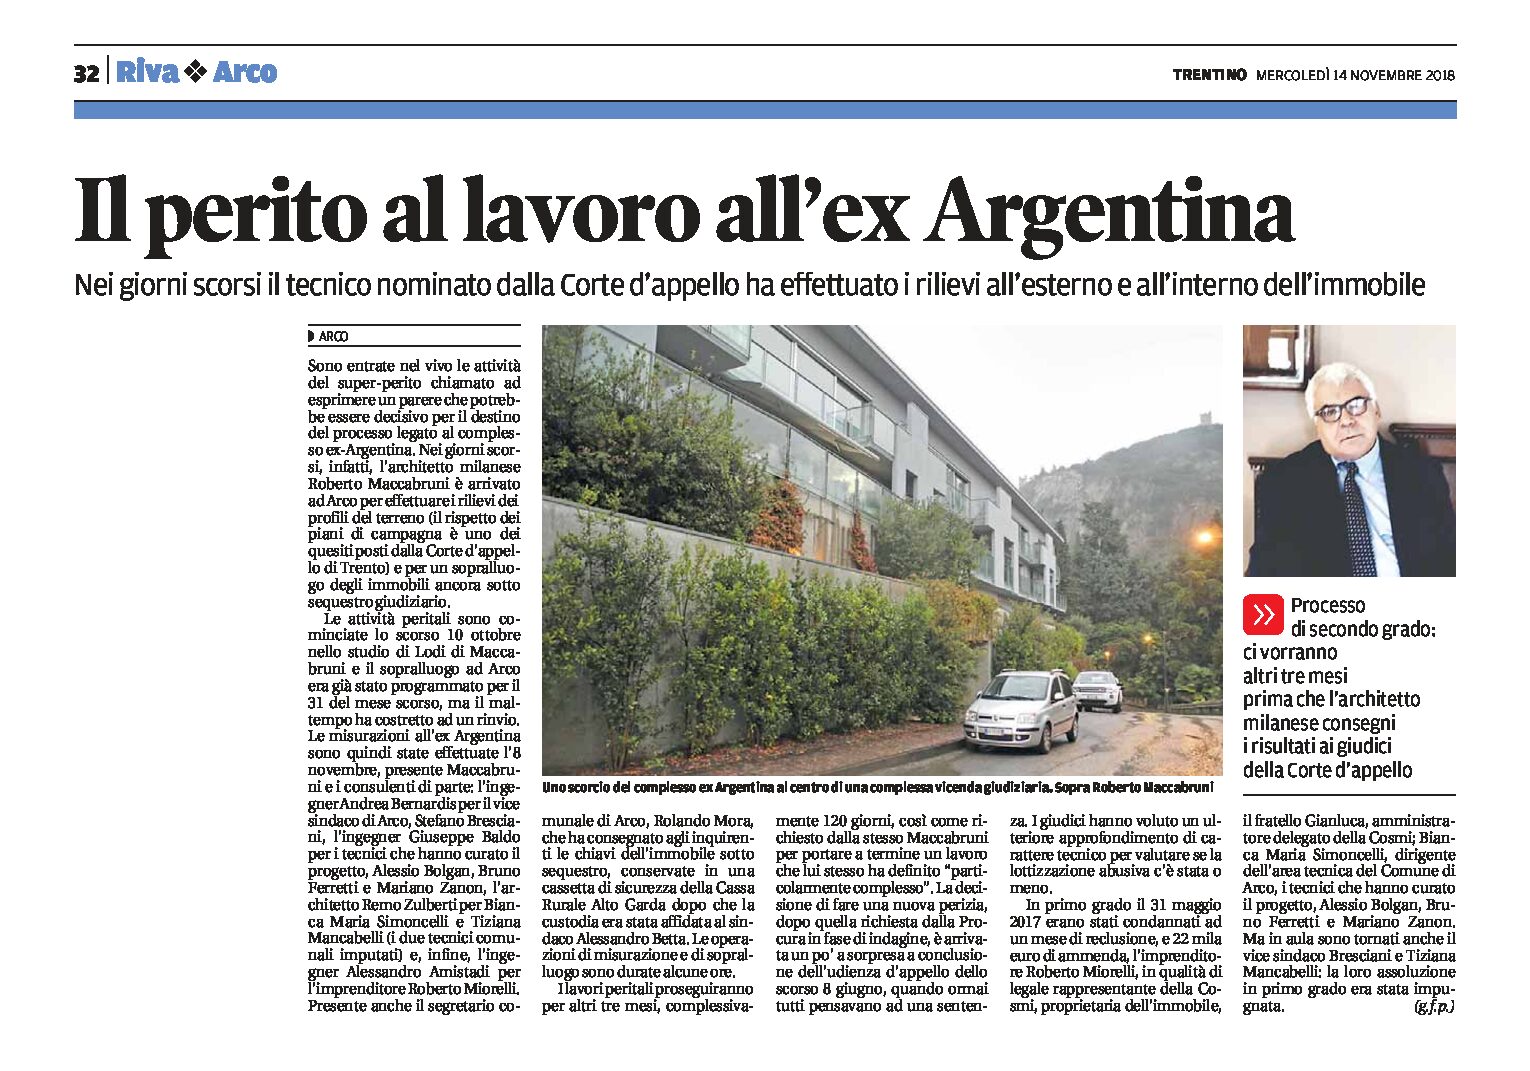 Arco, ex Argentina: il super-perito al lavoro